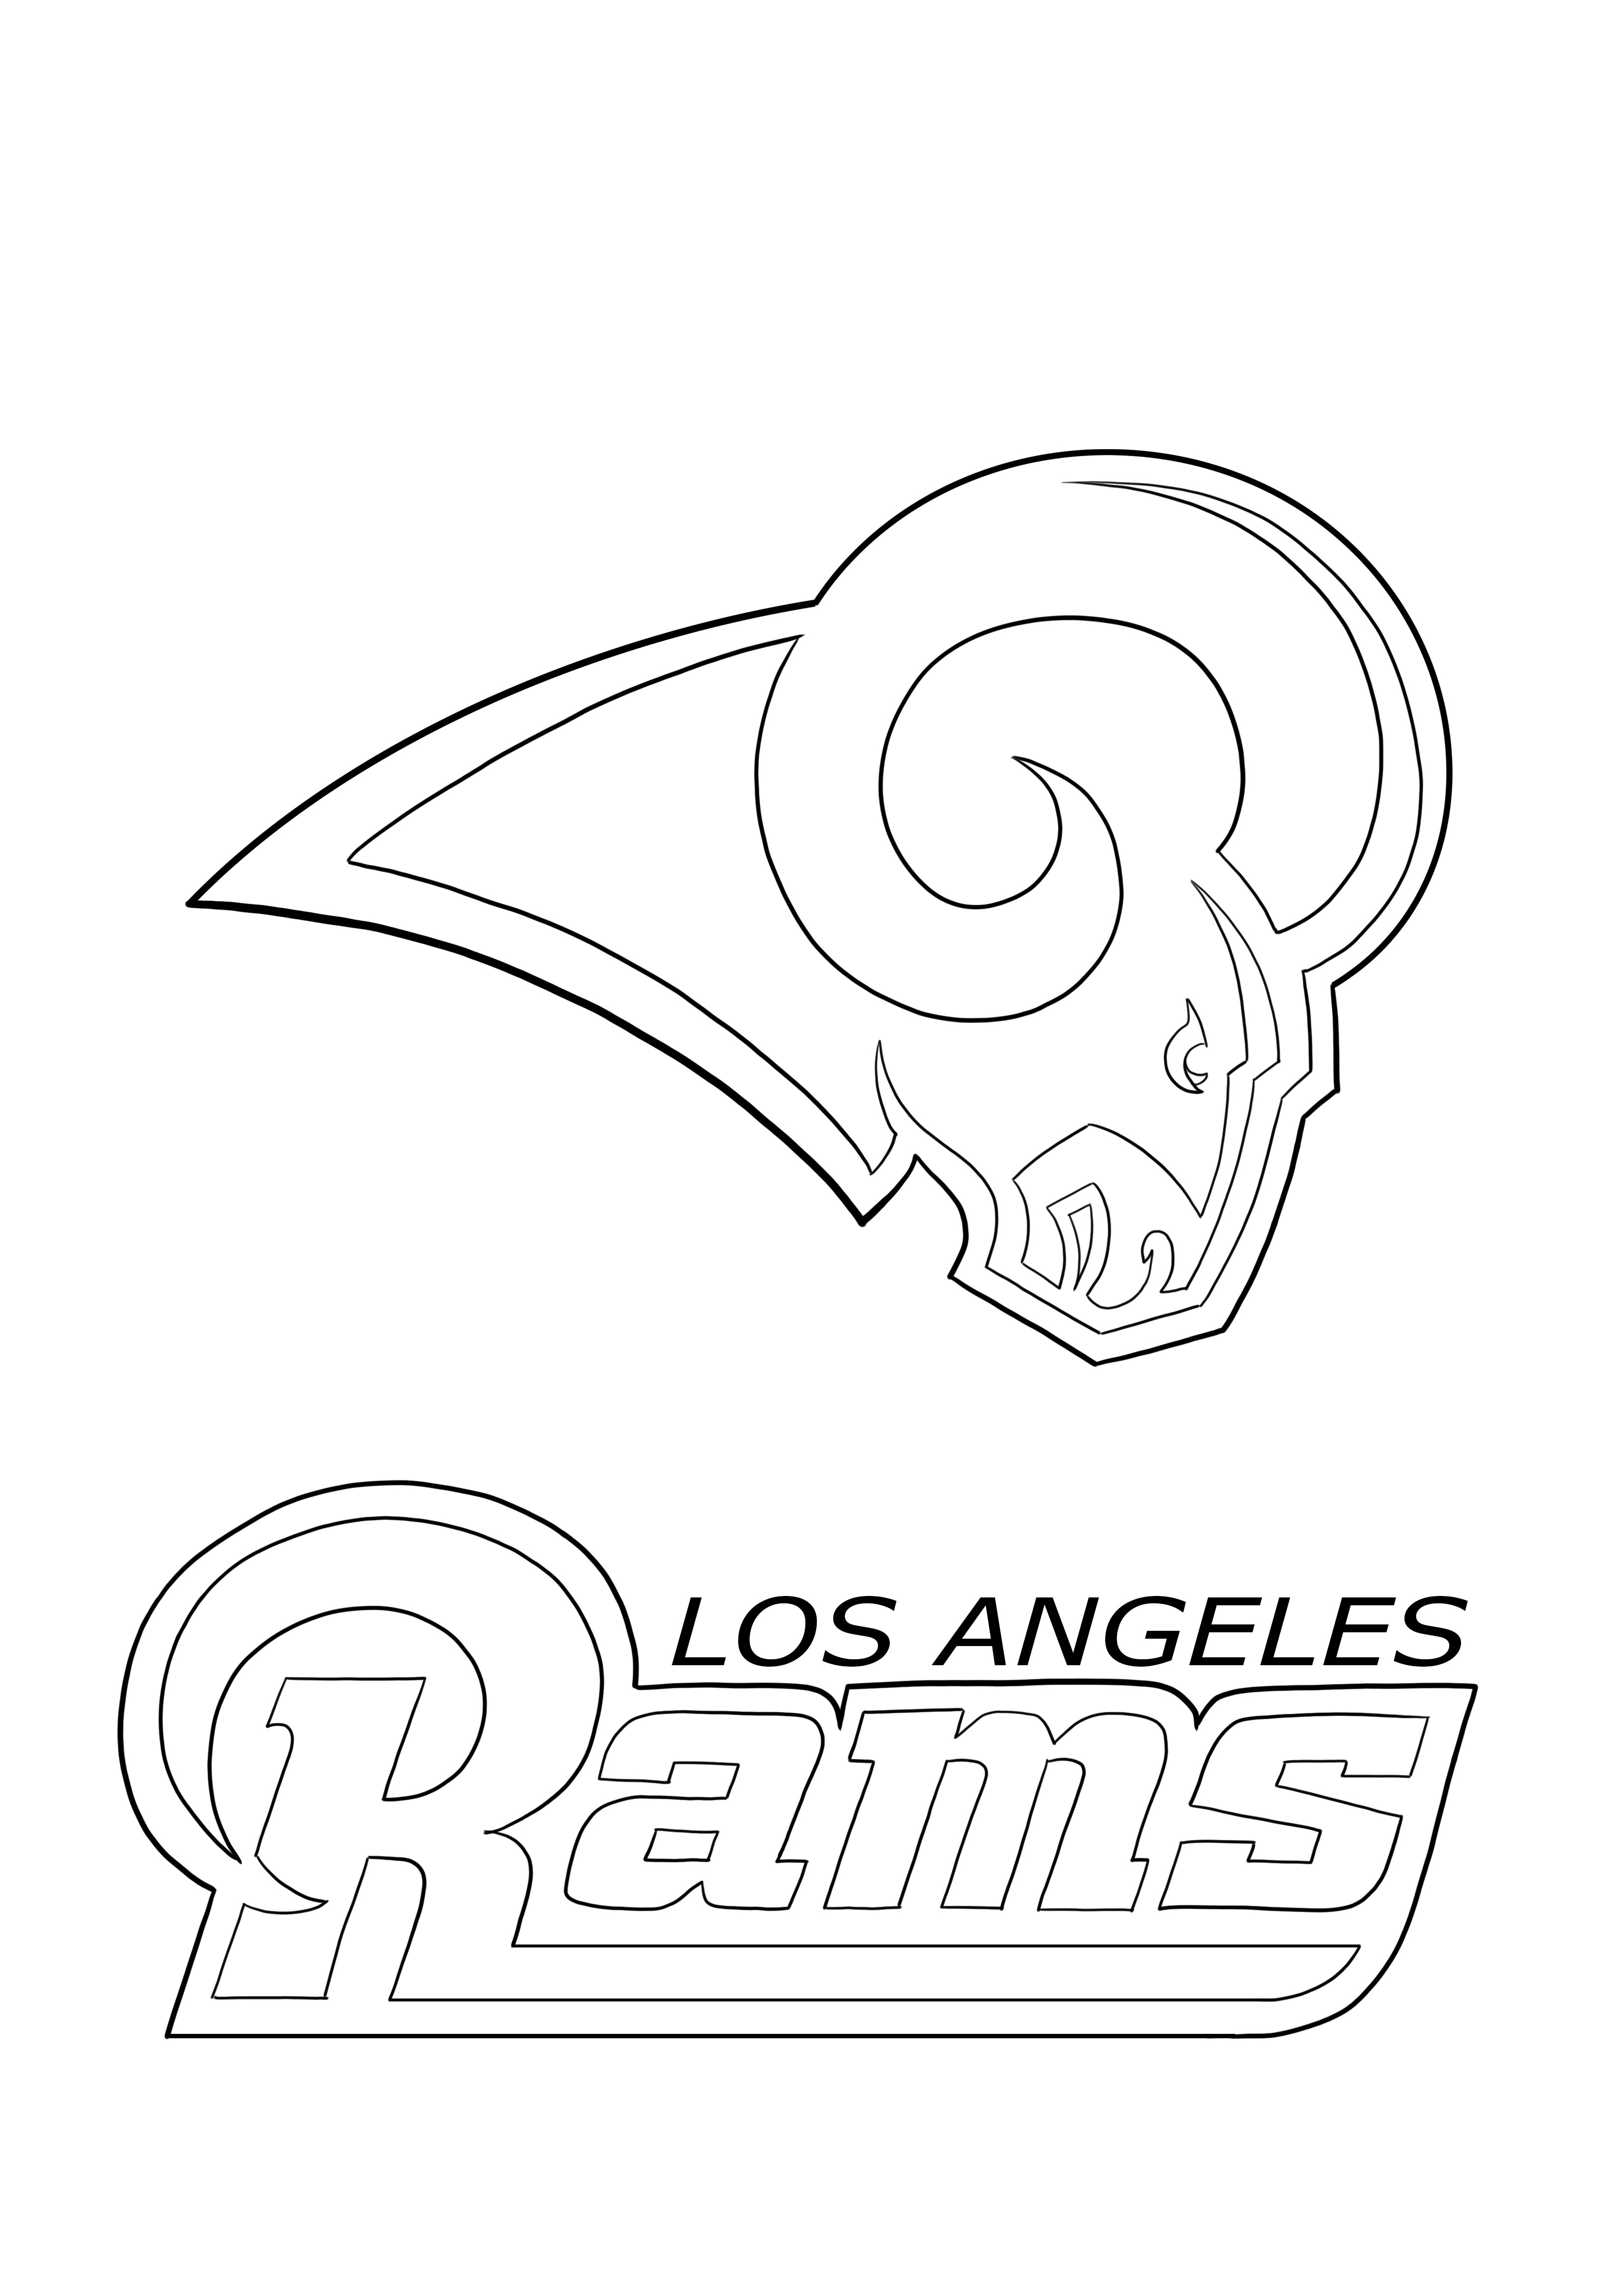 Los Angeles Rams väritys ja ilmainen lataus